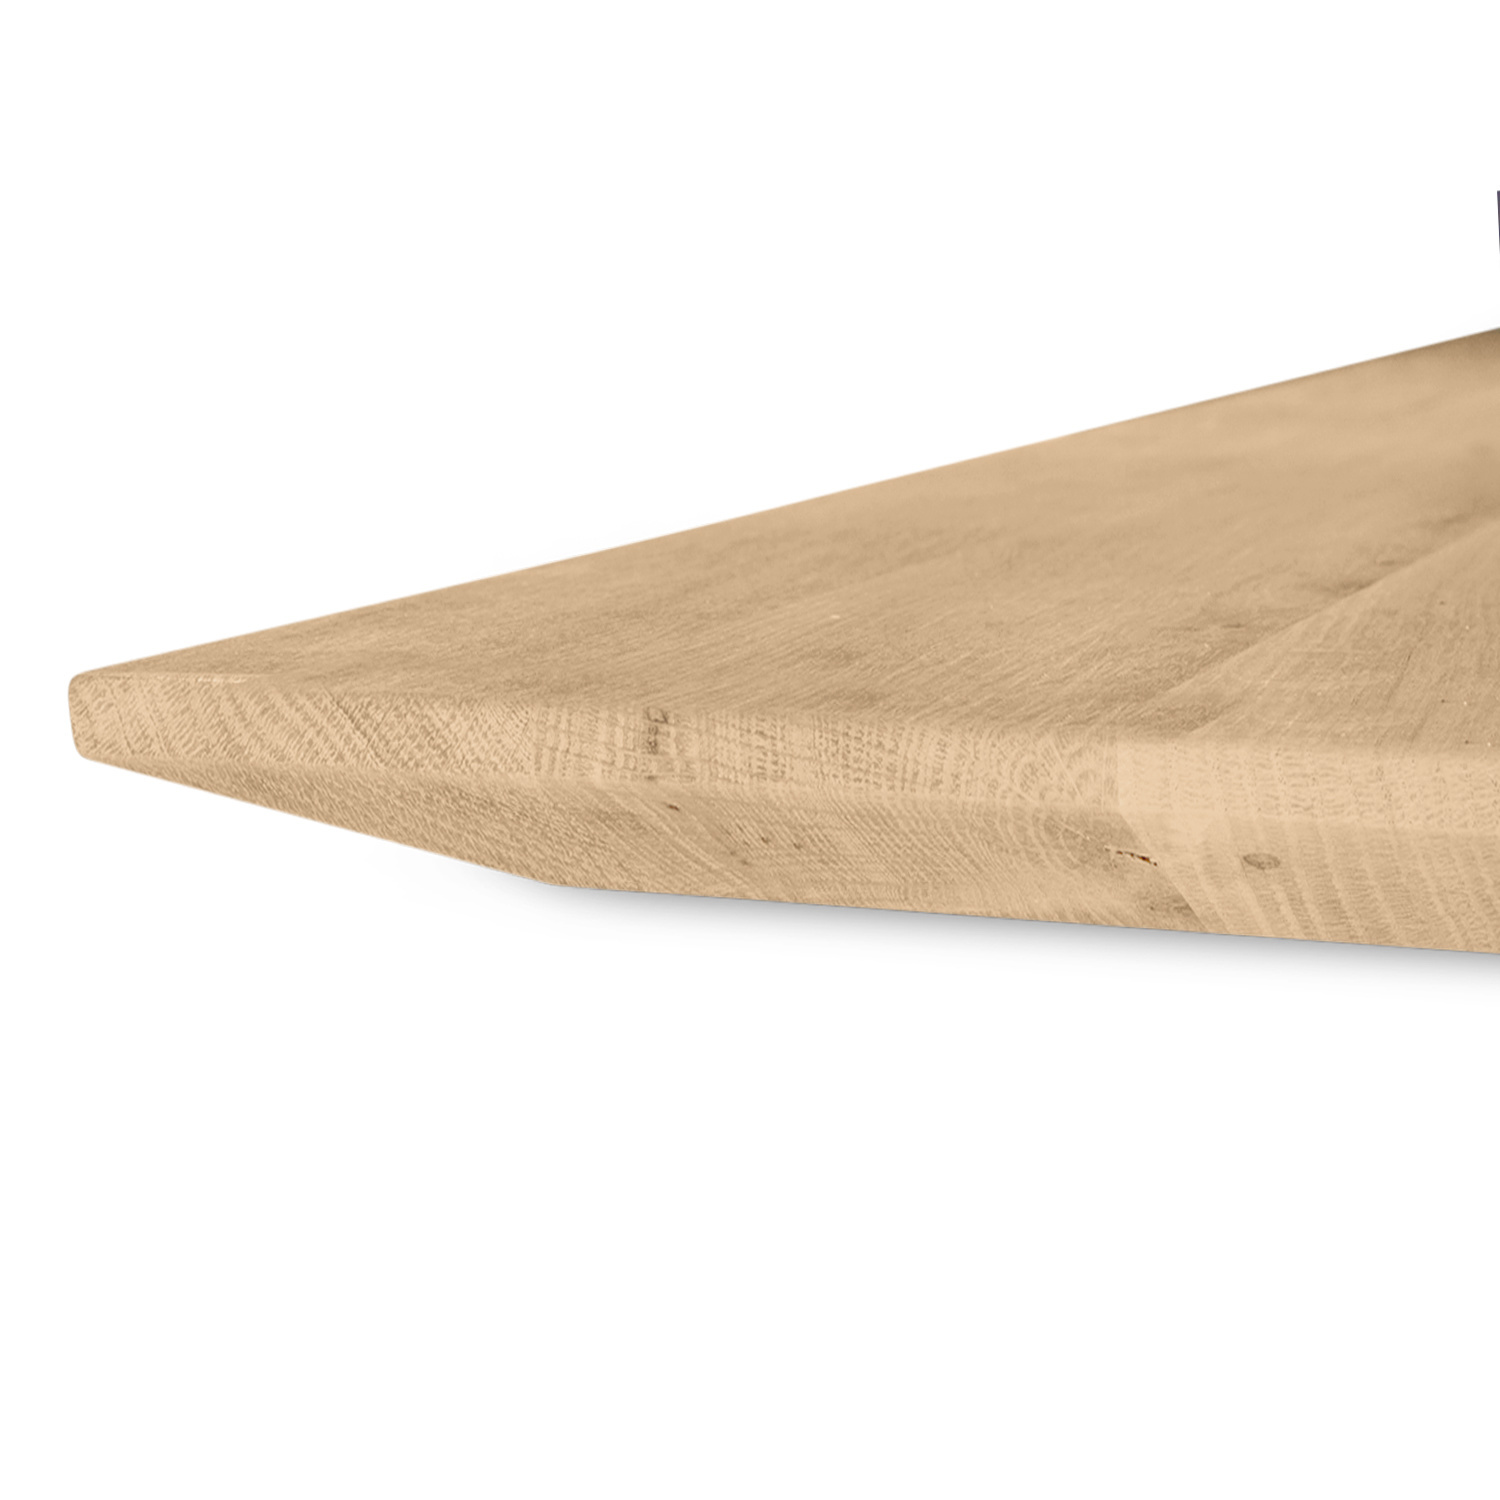  Eiken tafelblad met verjongde rand - 4 cm dik (1-laag) - Diverse afmetingen - rustiek Europees eikenhout - met brede lamellen (circa 14-20 cm) - verlijmd kd 8-12%